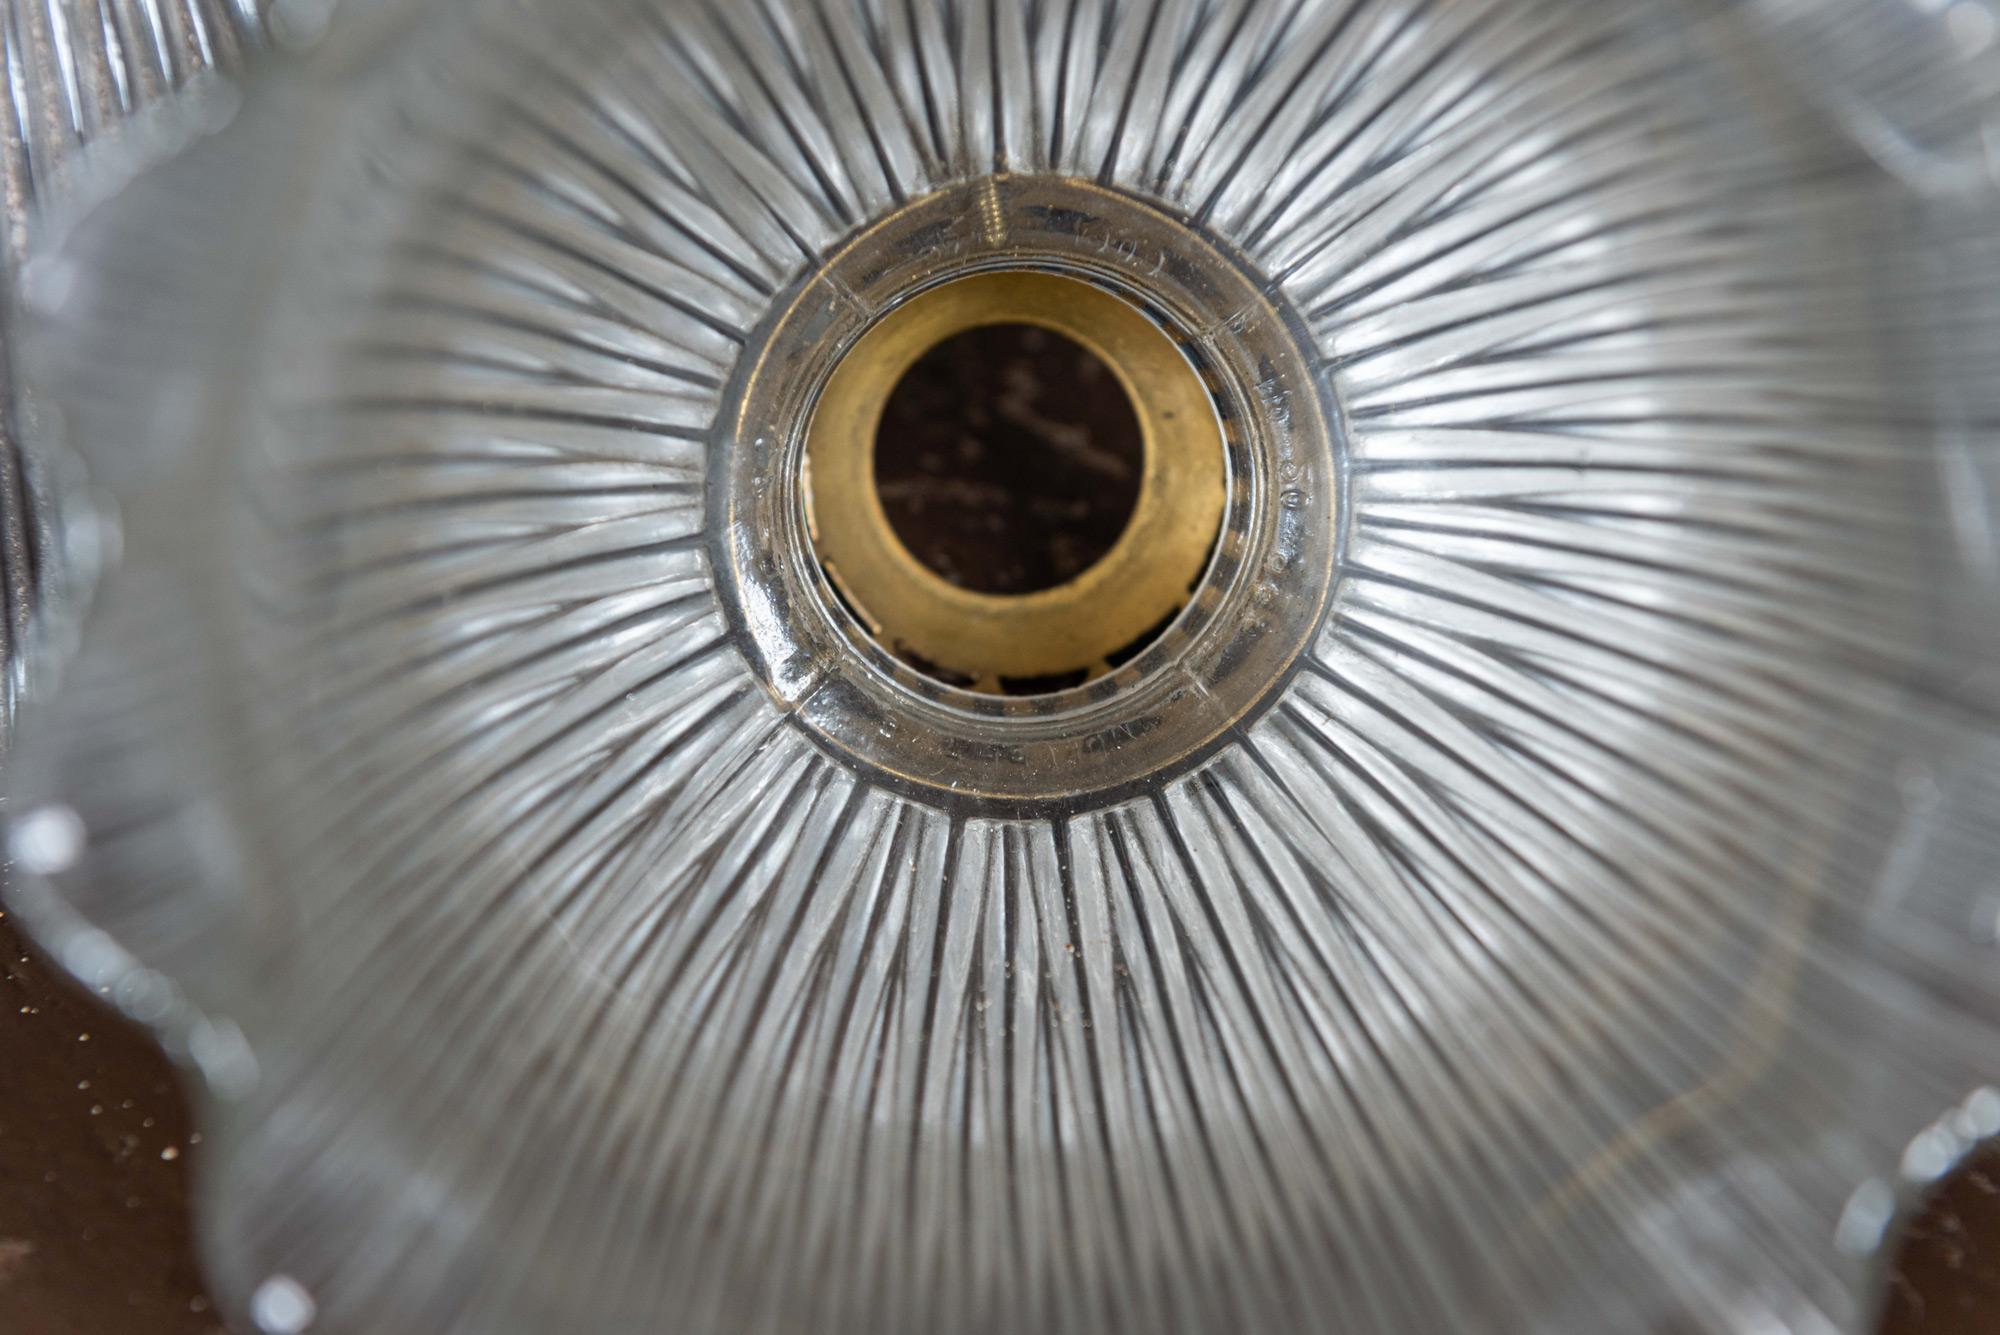 Englische Holophan-Glas-Pendelleuchten, um 1900.
Dickes Krustenglas mit originalen Messinggalerien
Der Preis ist pro Stück.

Maße: Höhe 15, Durchmesser 16 cm.